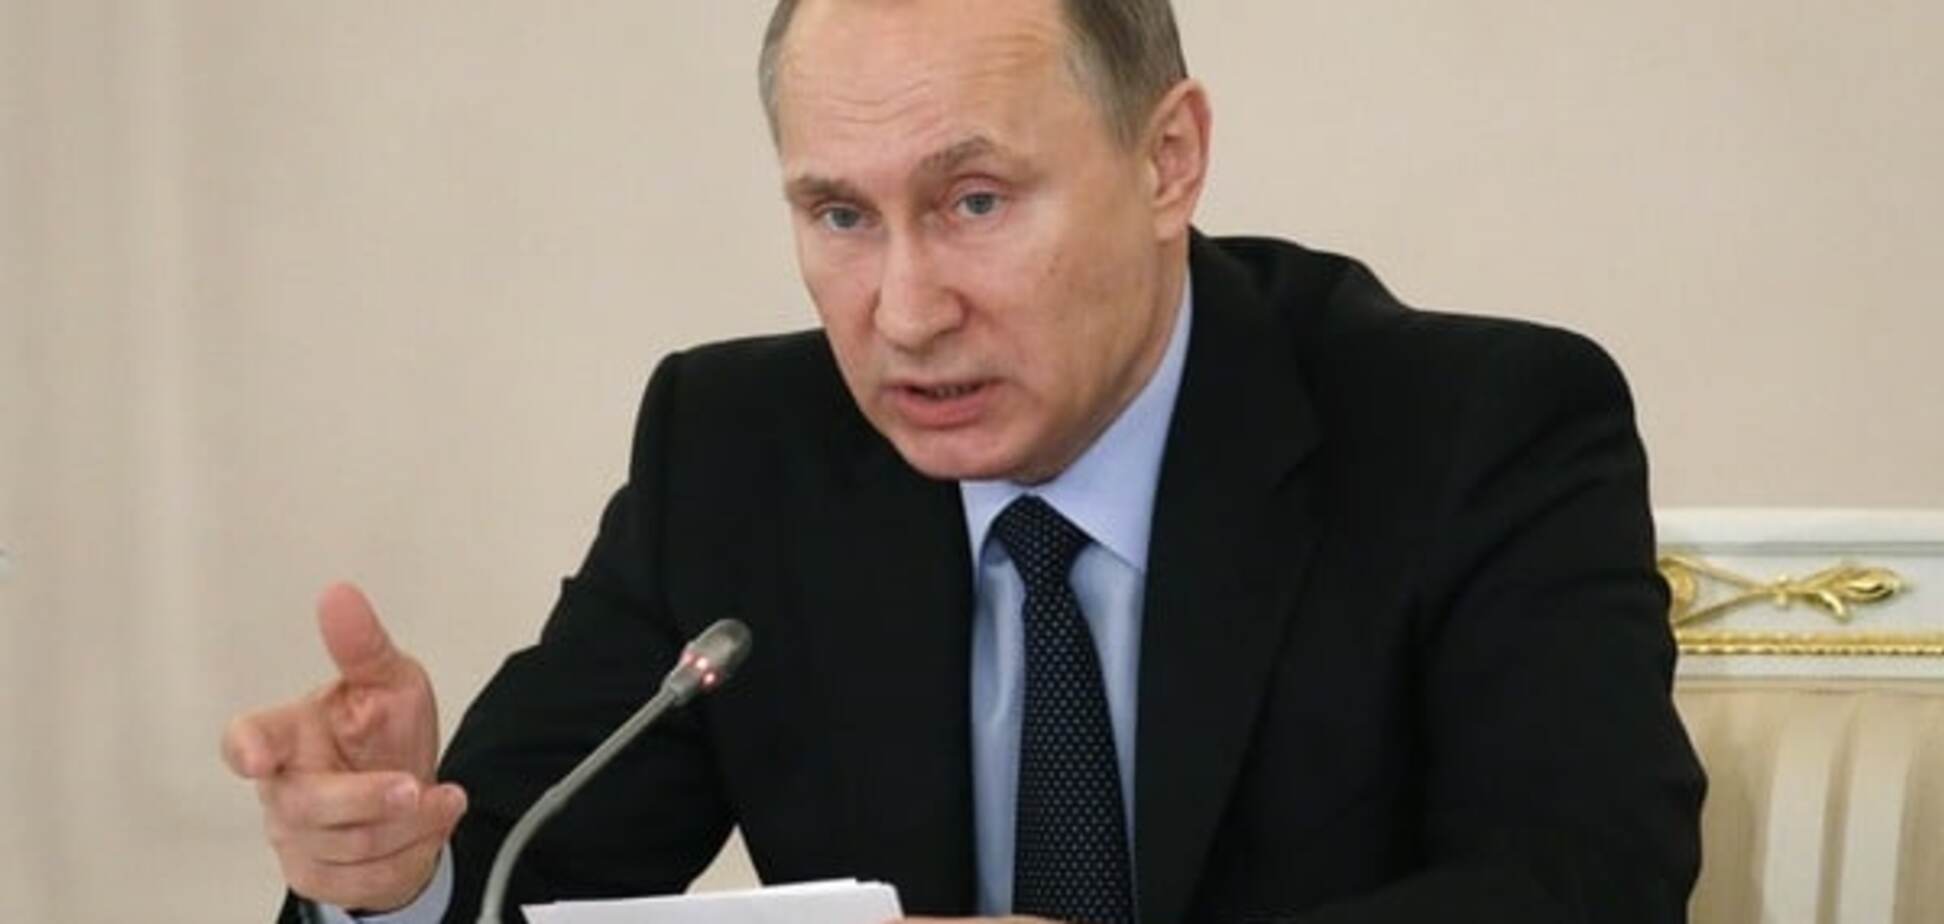 Альтернативи немає: журналіст розповів, що тримає режим Путіна на плаву